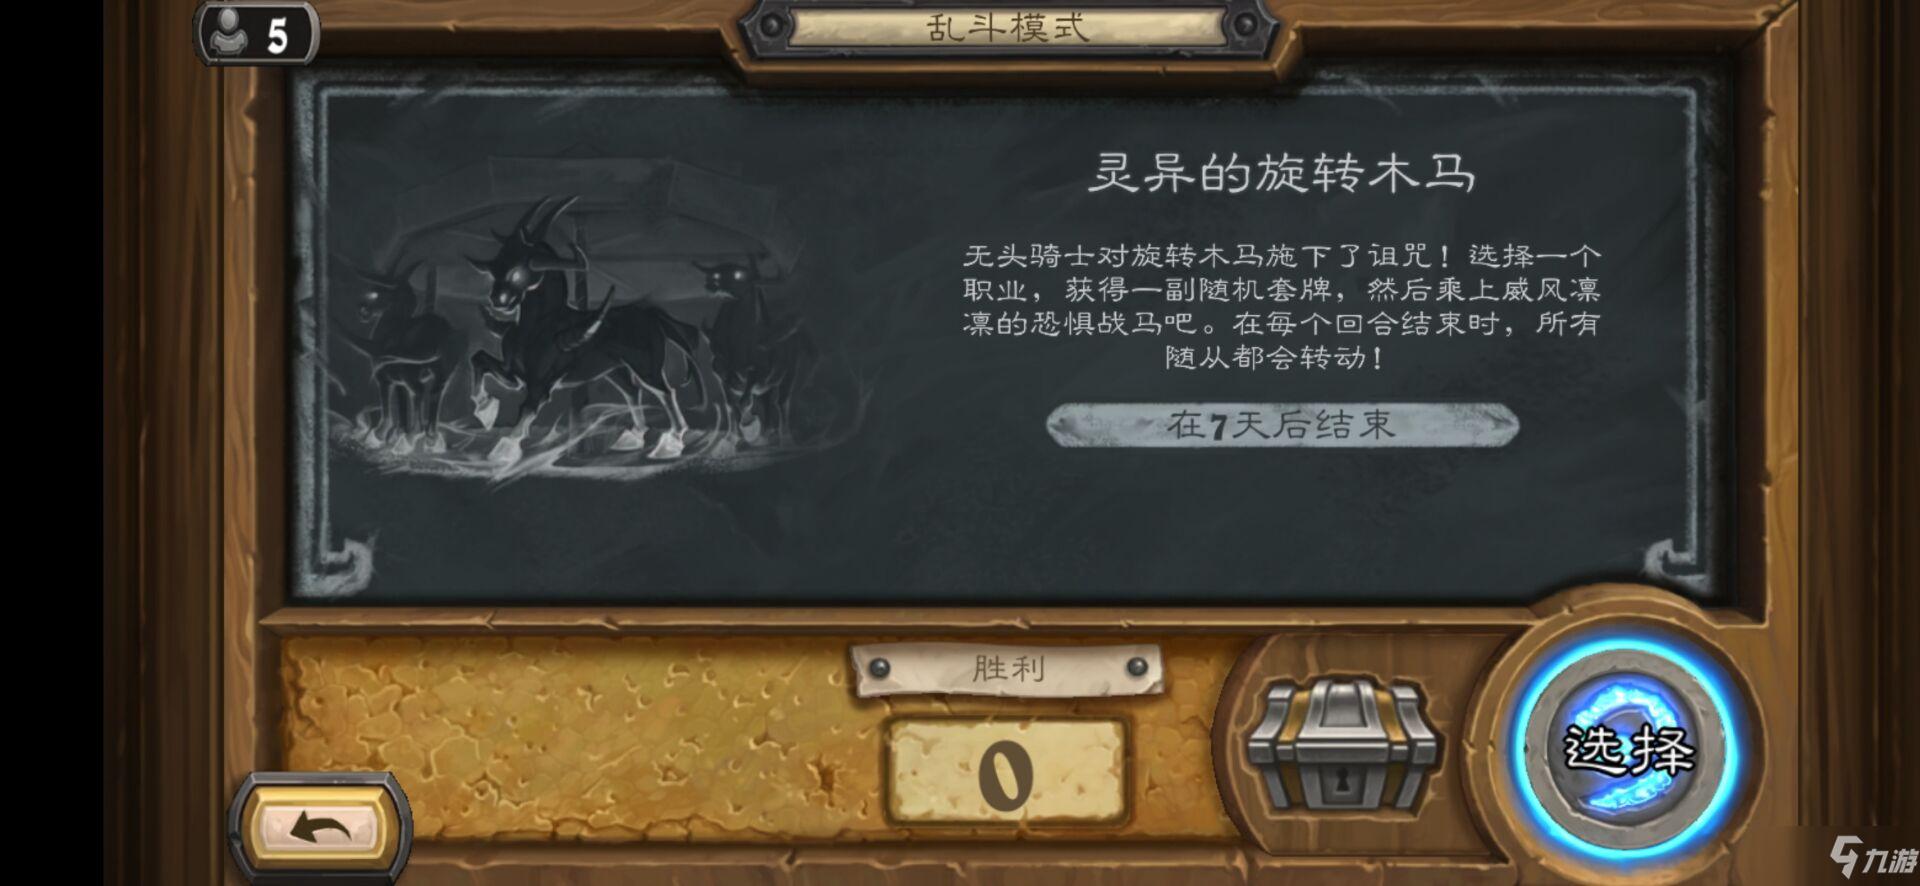 《炉石传说》10月29日乱斗灵异的旋转木马玩法攻略介绍